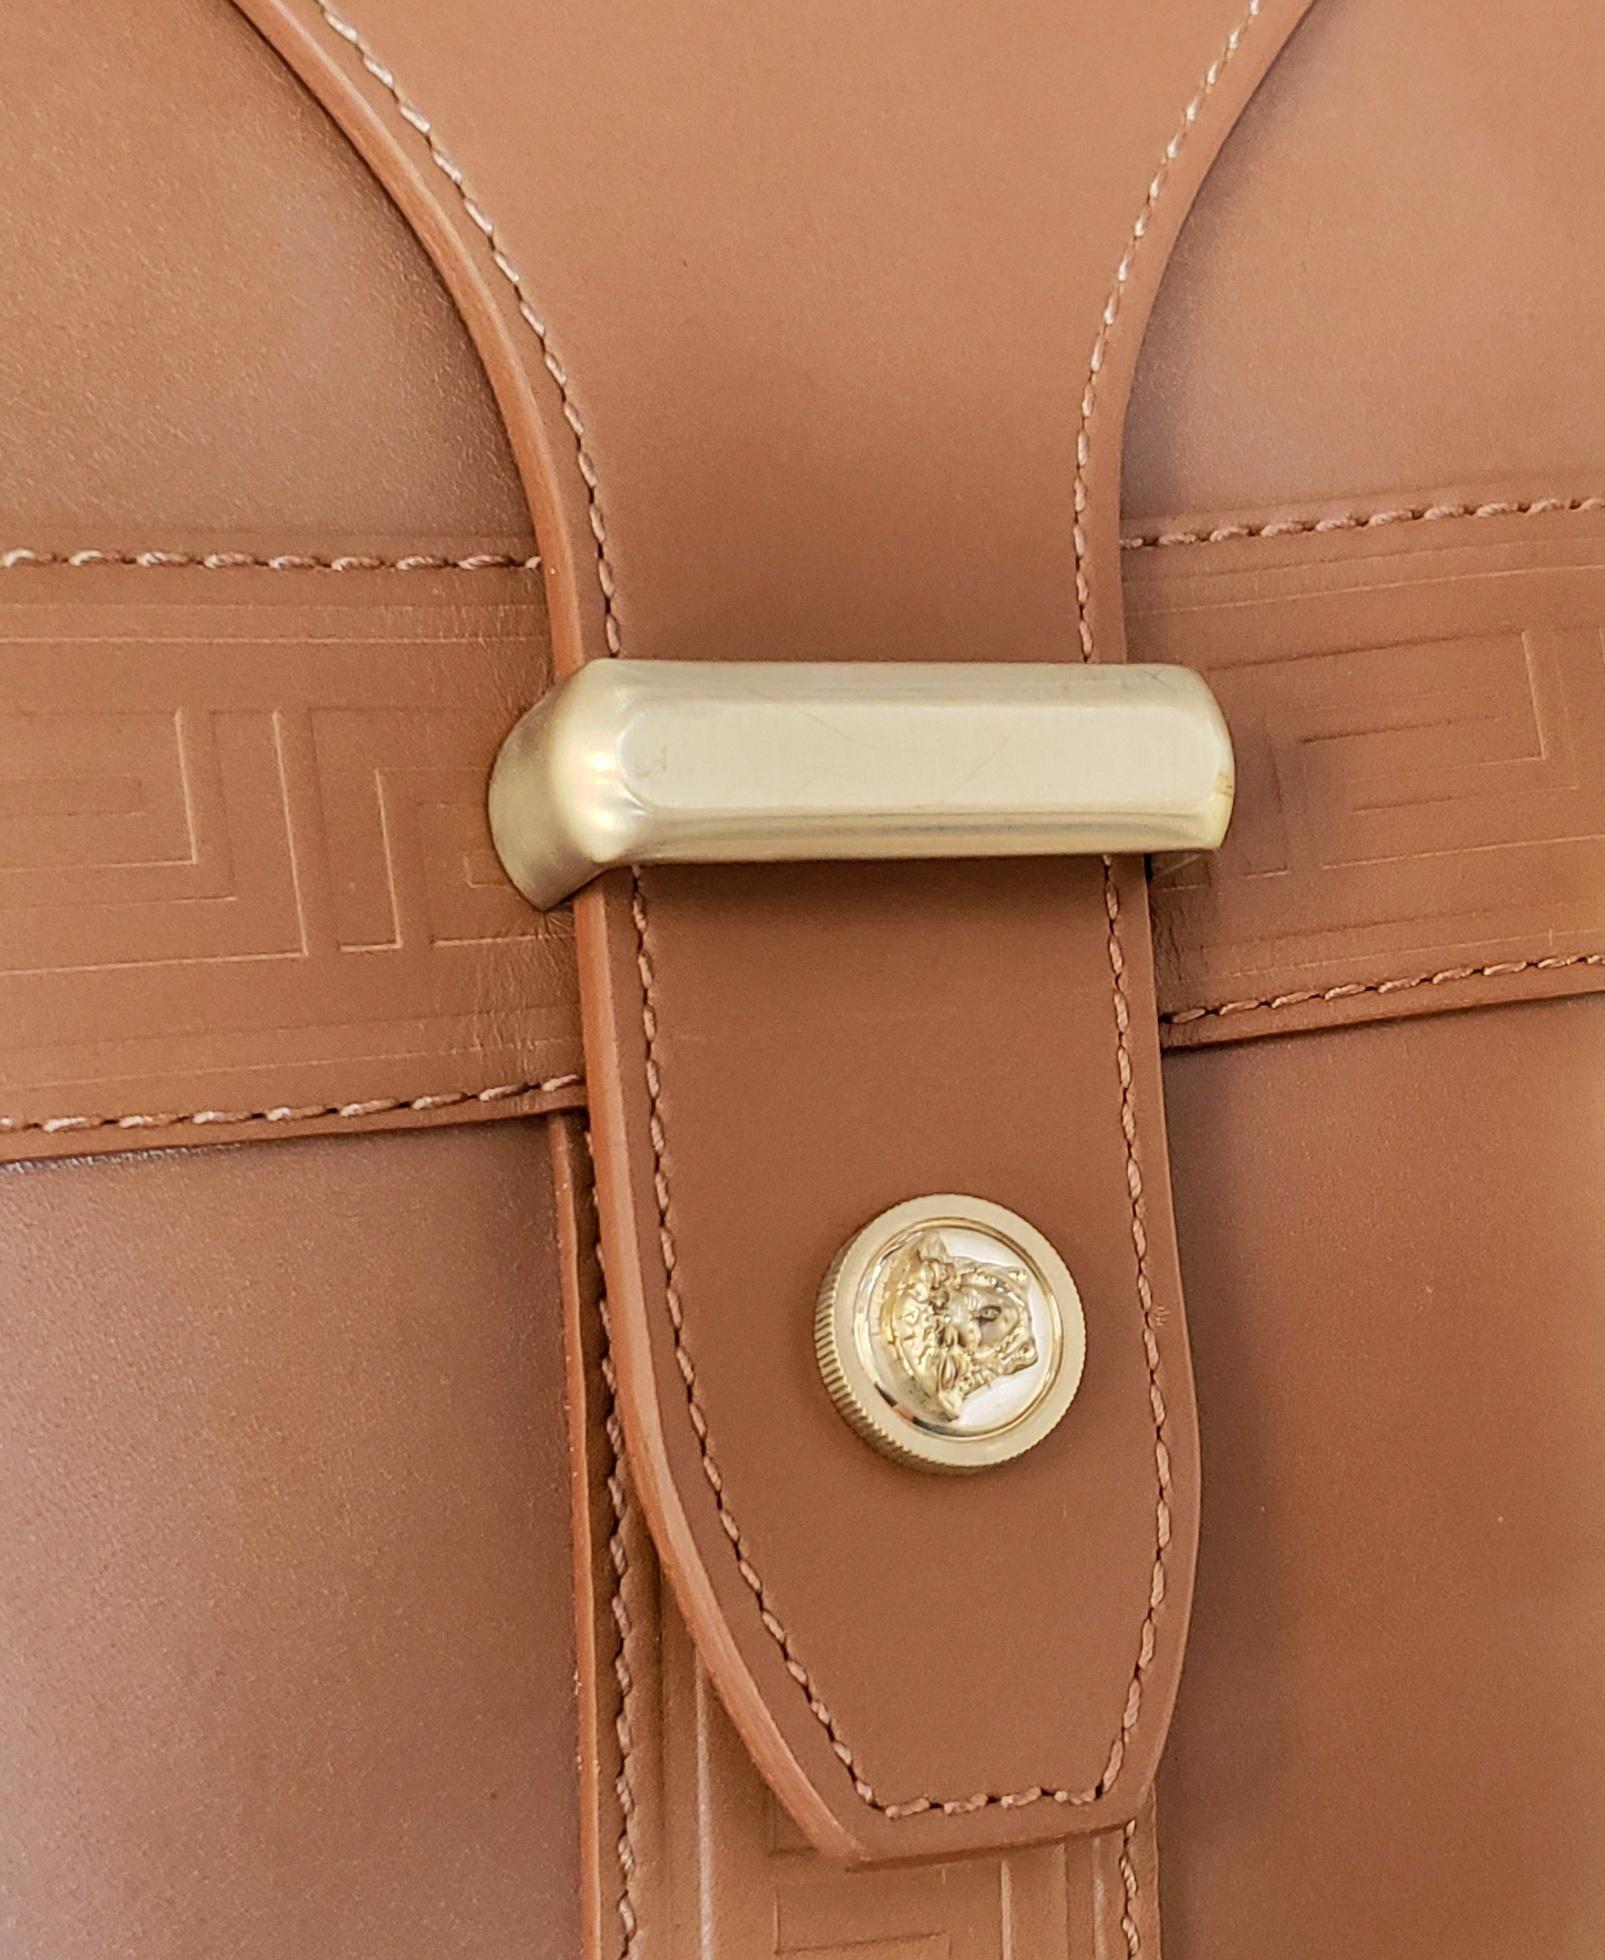 Men's S/S 2012 Look # 27 New VERSACE men's runway brown leather travel handbag